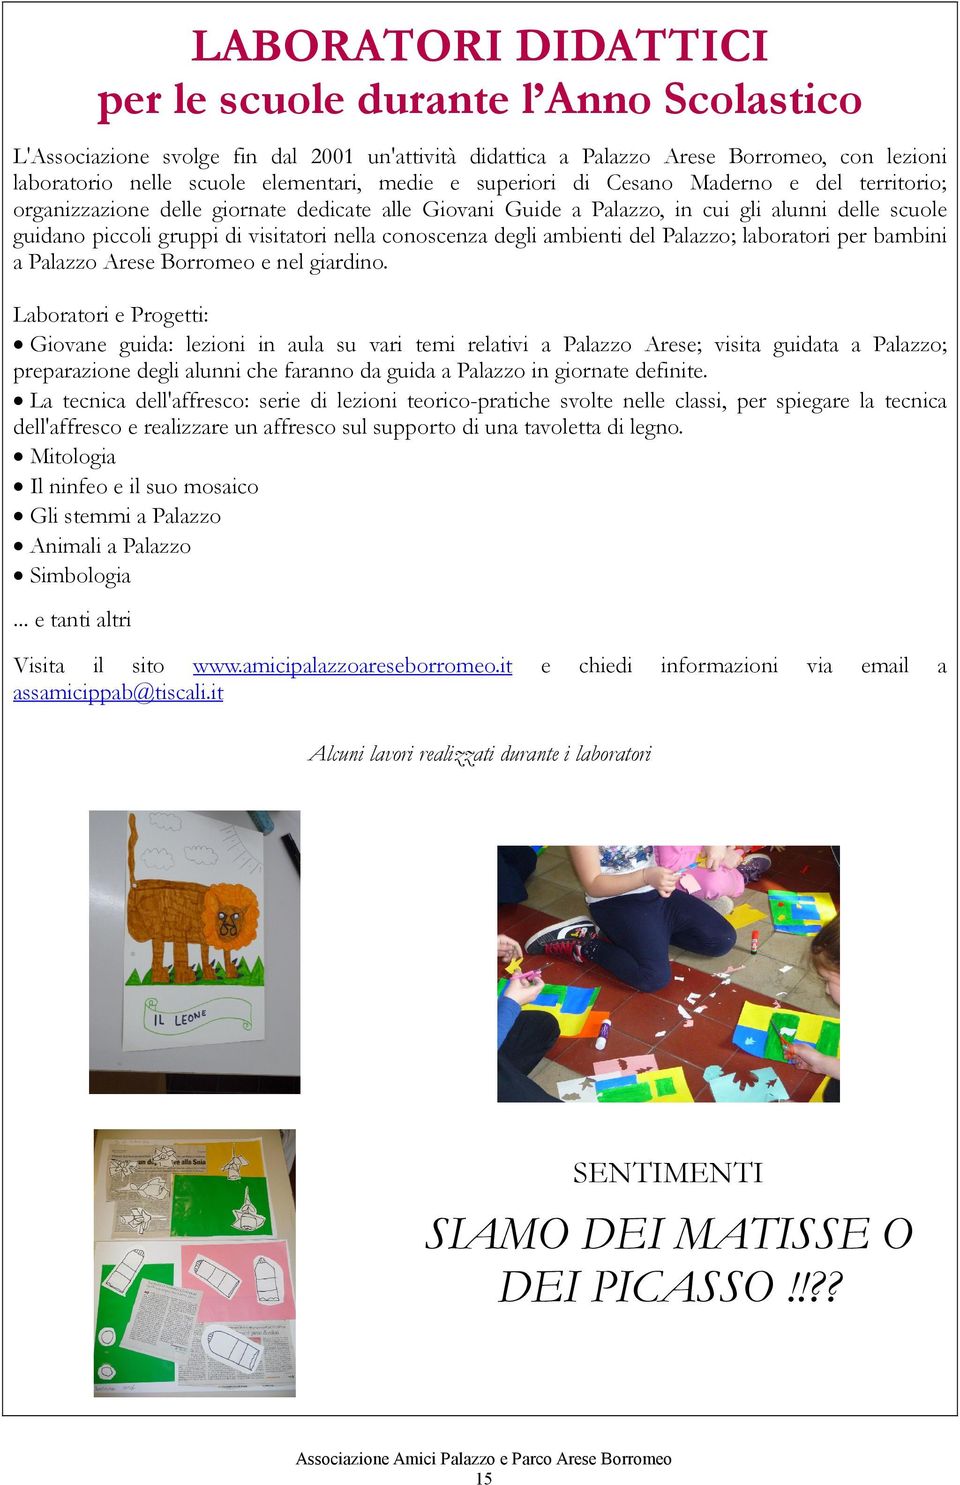 conoscenza degli ambienti del Palazzo; laboratori per bambini a Palazzo Arese Borromeo e nel giardino.